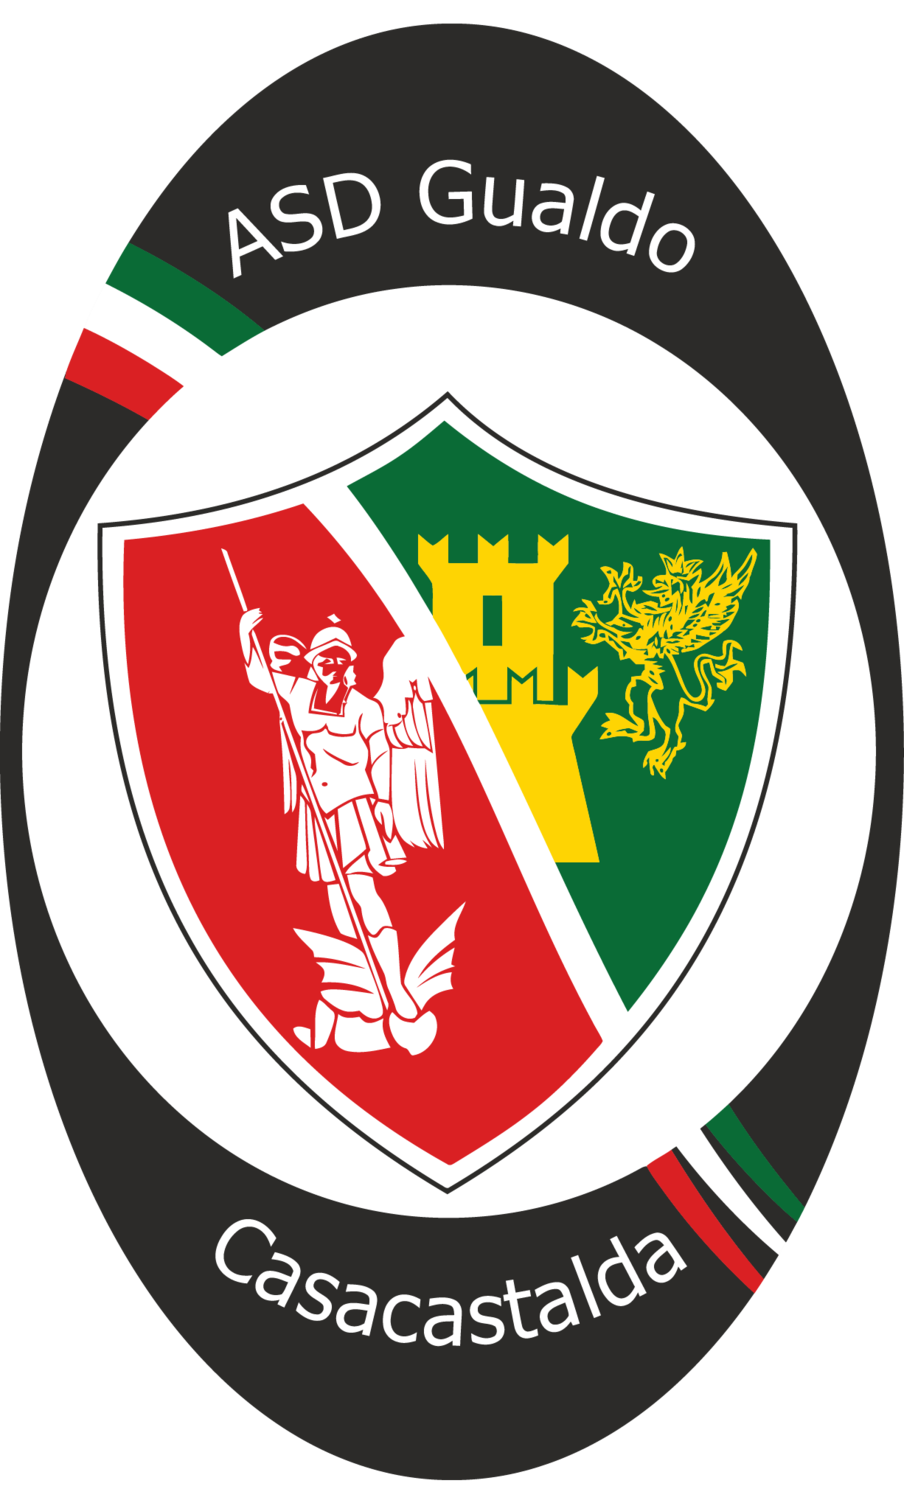 Wappen ASD Gualdo Casacastalda